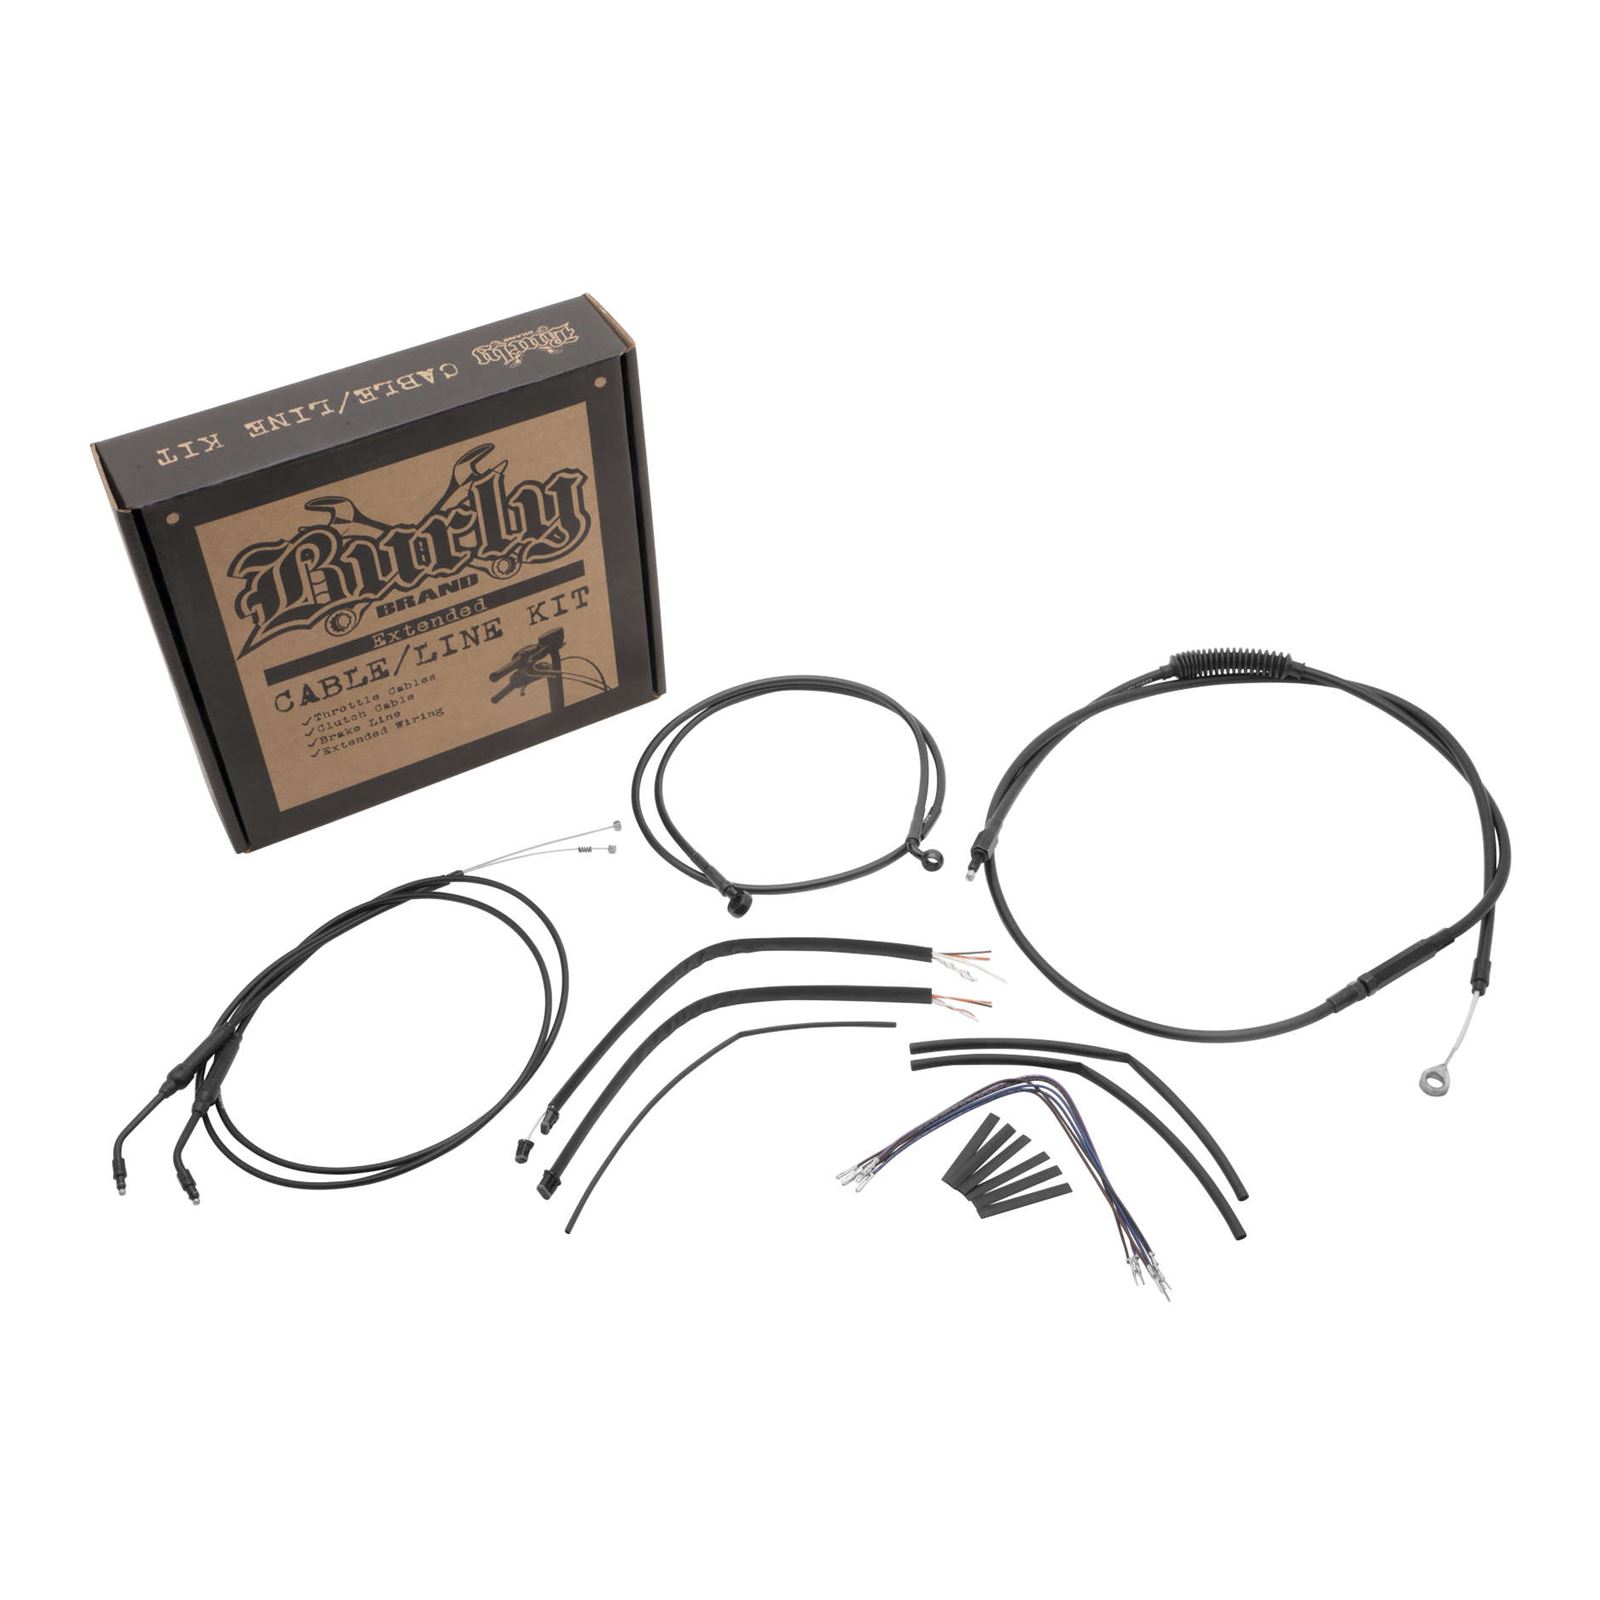 Burly Brand Complete Black Vinyl Handlebar Cable/Brake Line Kit For 14" Ape Hanger Handlebars with ABS